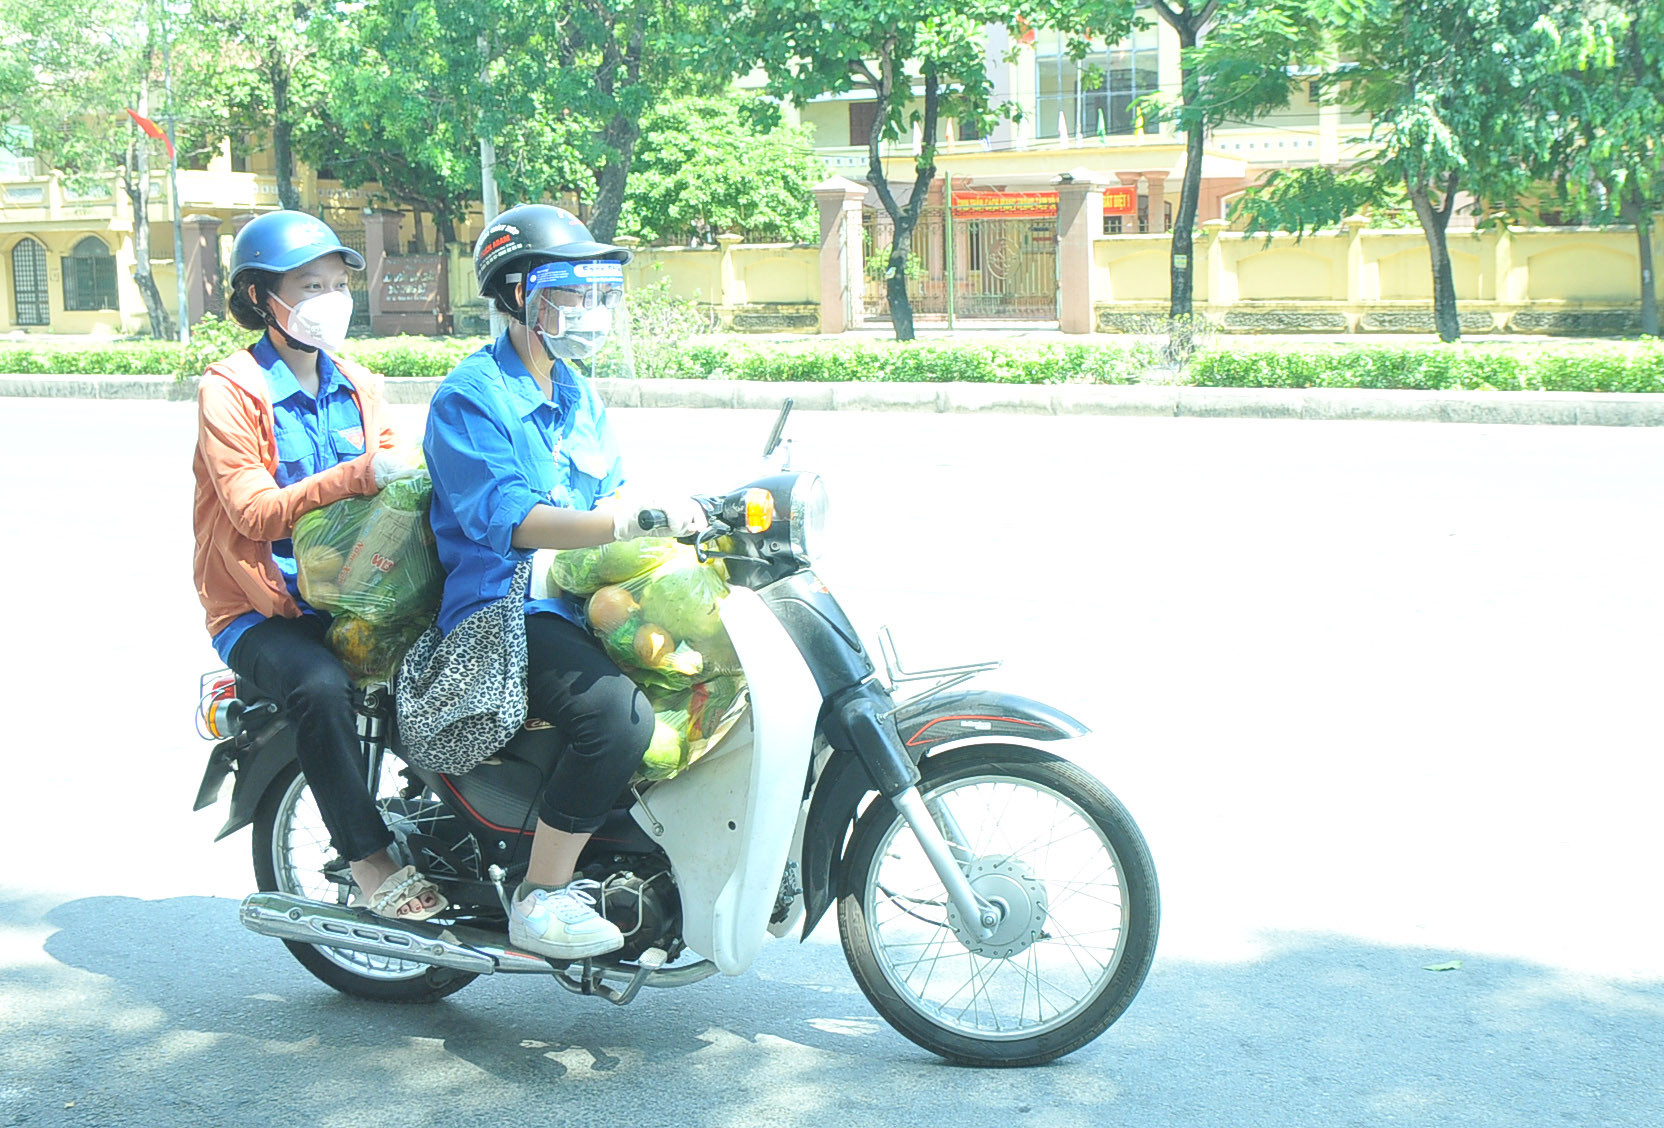 Mỗi chuyến, các bạn Shipper áo xanh mang được từ 4 đến 5 túi thực phẩm để đến hỗ trợ cho các hộ gia đình trong các khối, xóm. Ảnh: Tiến Đông